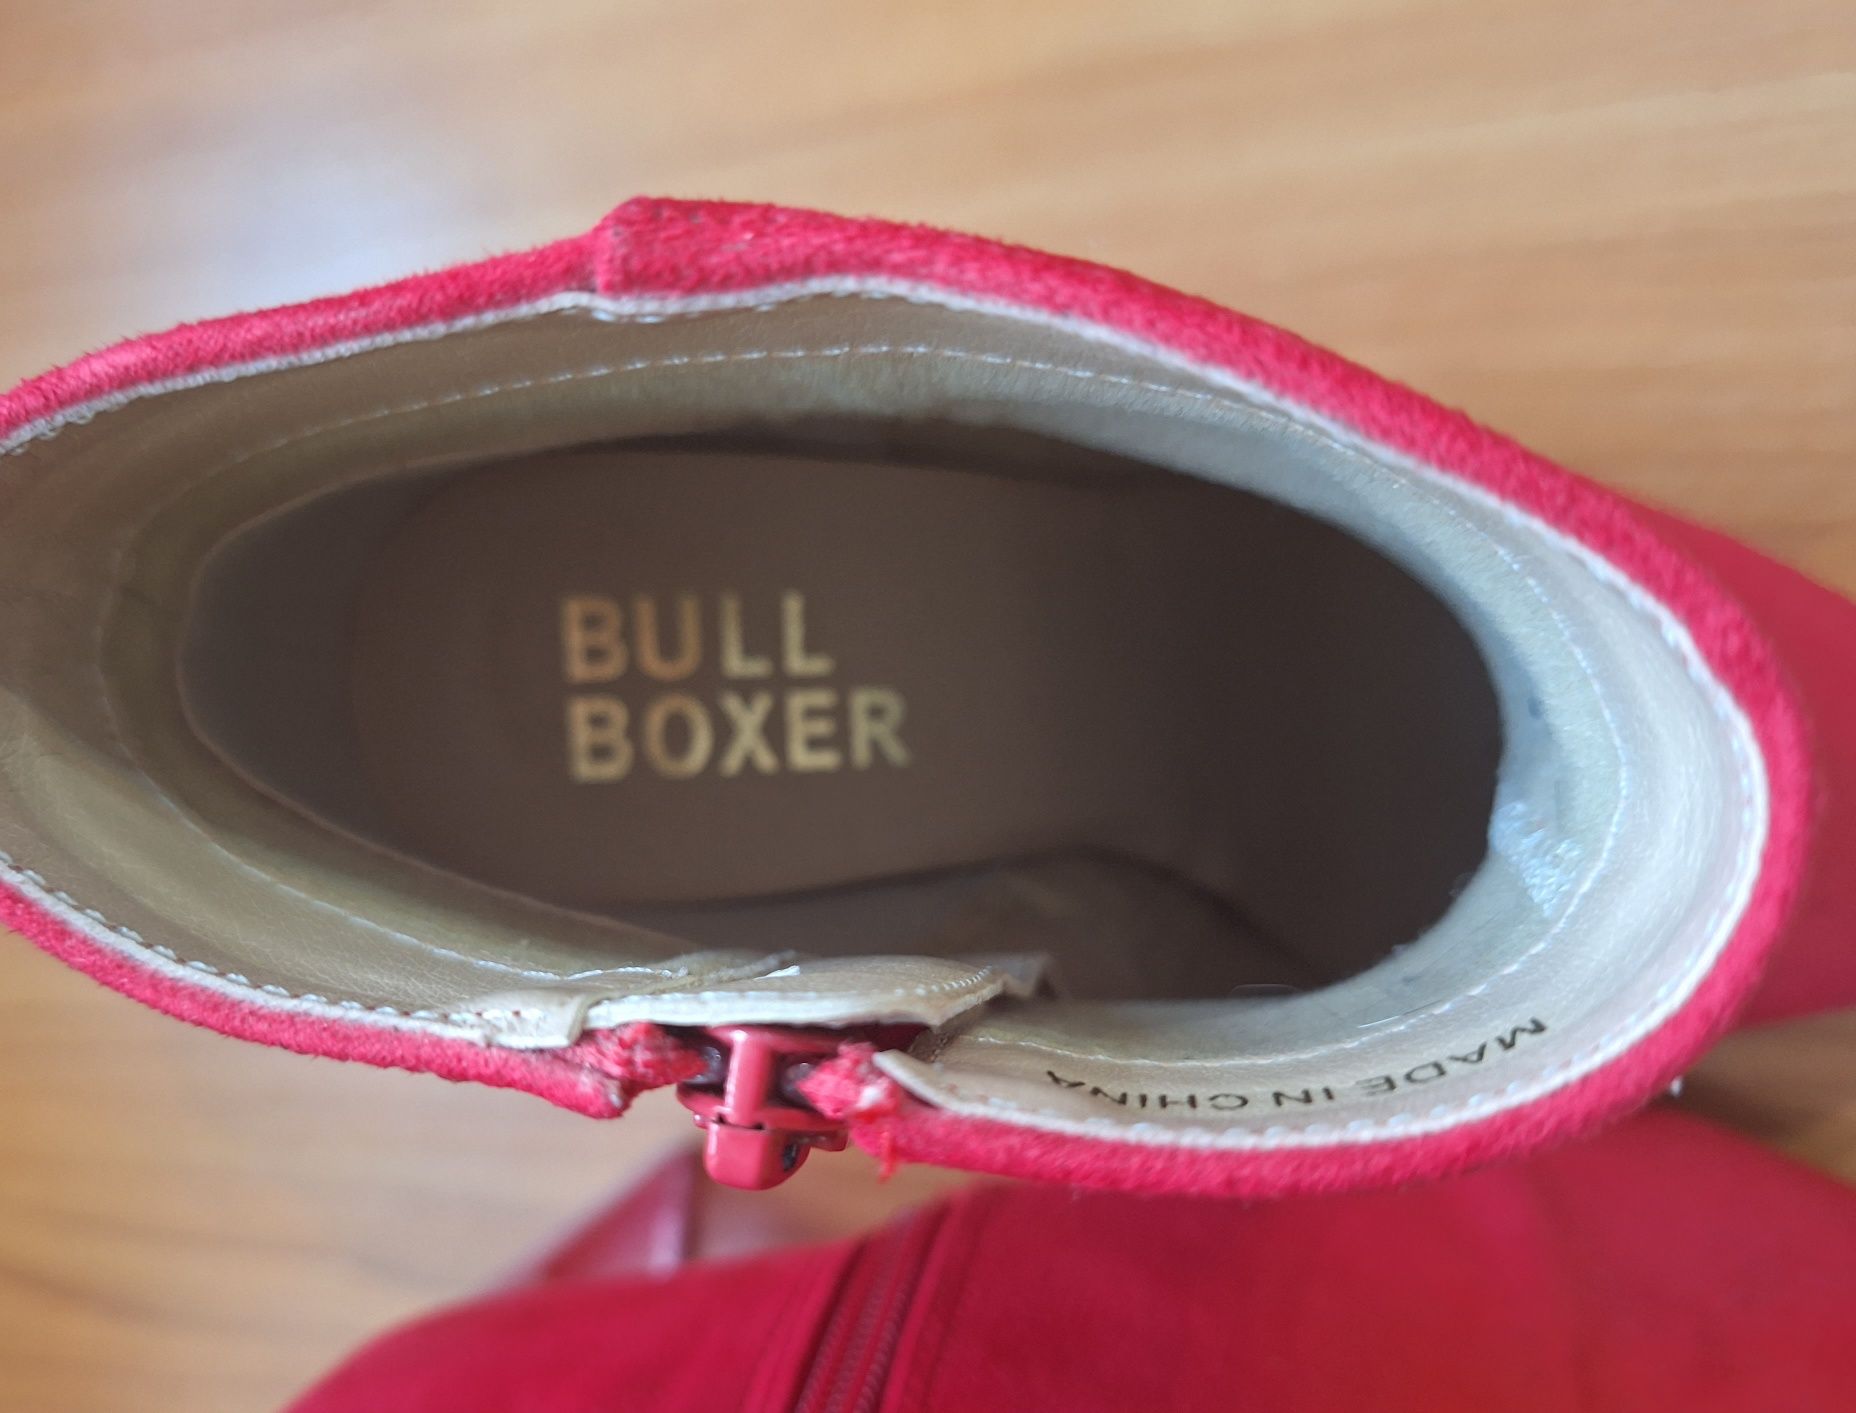 Bullboxer botki czerwone r. 36 przezroczyste obcasy